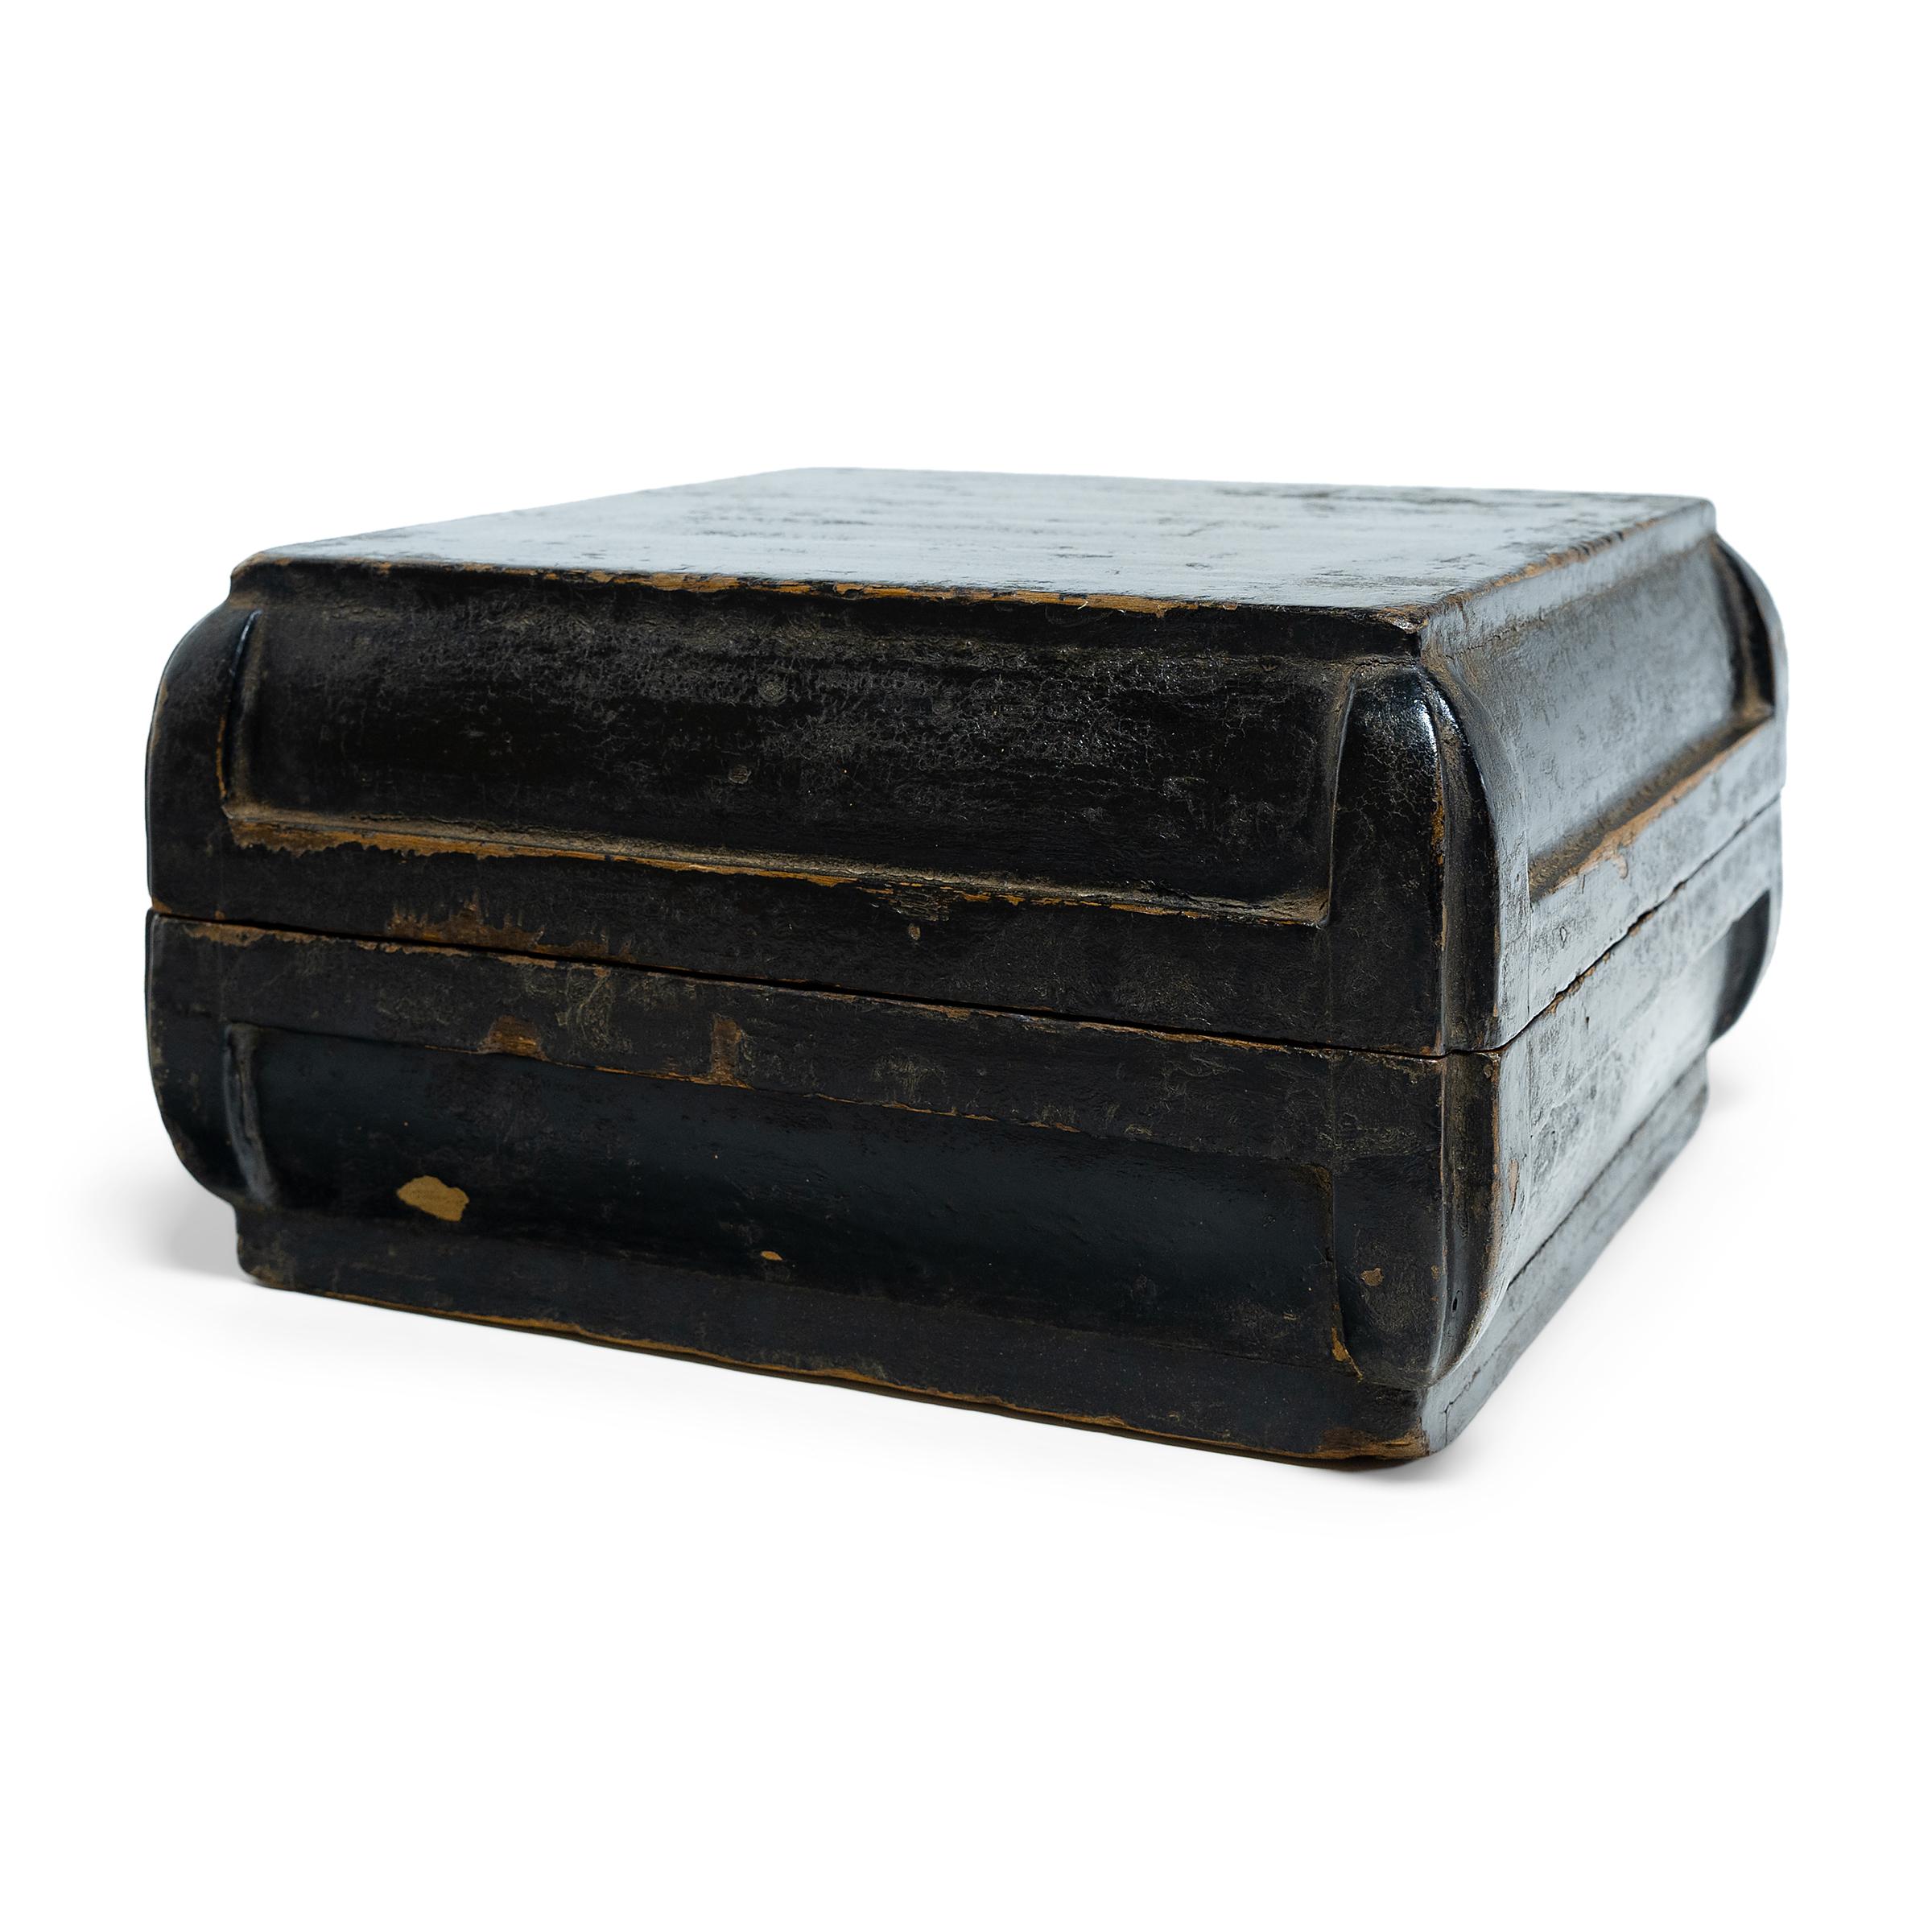 Cette boîte laquée simple était autrefois utilisée comme boîte à casse-croûte au XIXe siècle, présentée comme cadeau lors des fêtes et des occasions spéciales. Pour le plus grand plaisir des destinataires, la boîte sans prétention s'ouvrait pour